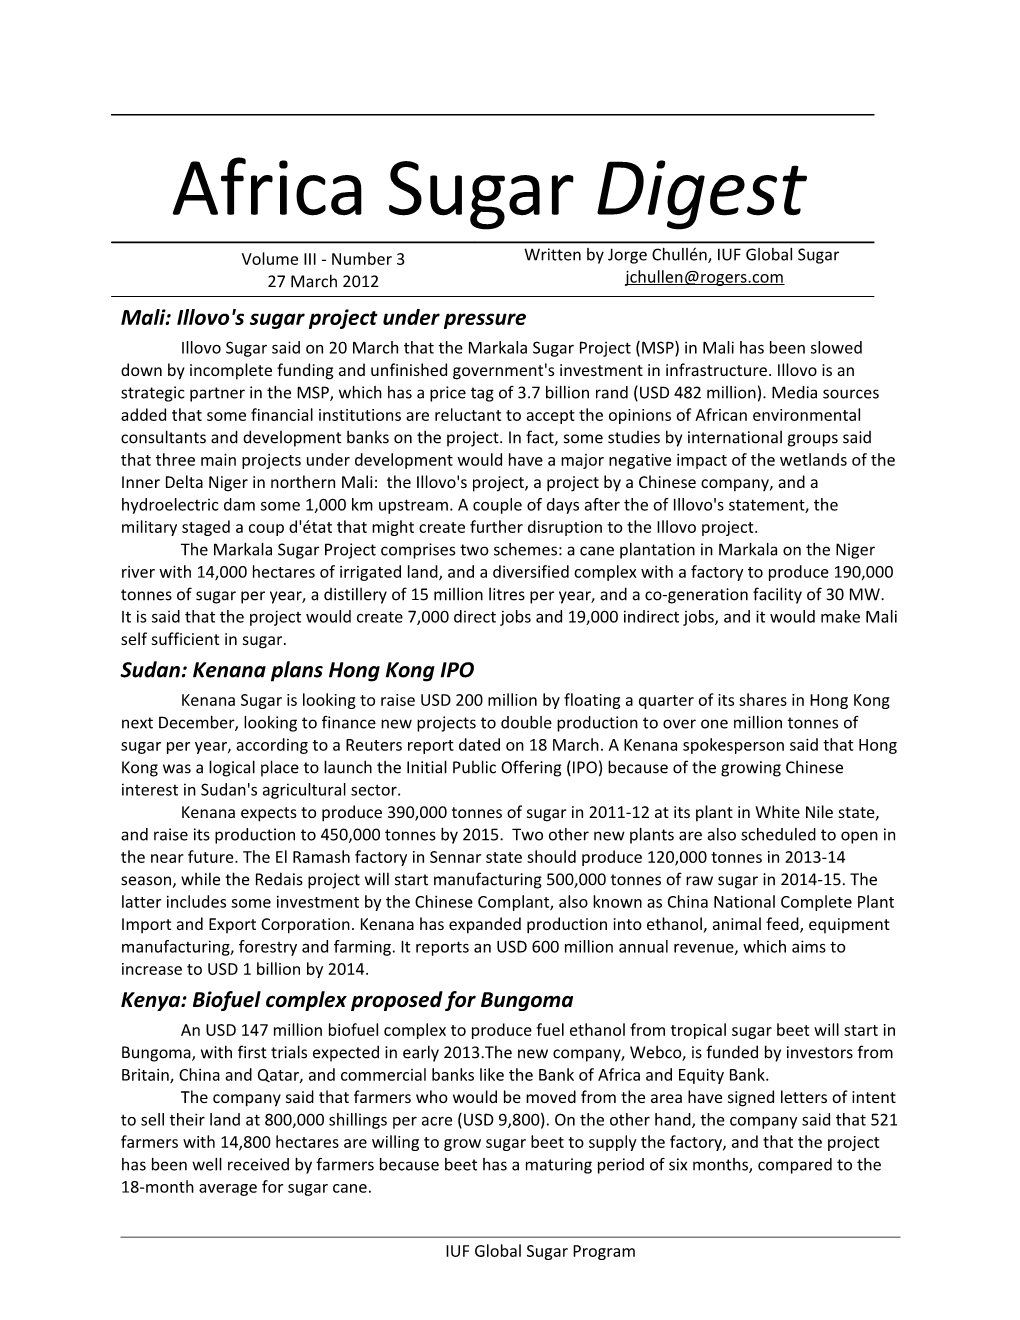 Mali: Illovo's Sugar Project Under Pressure